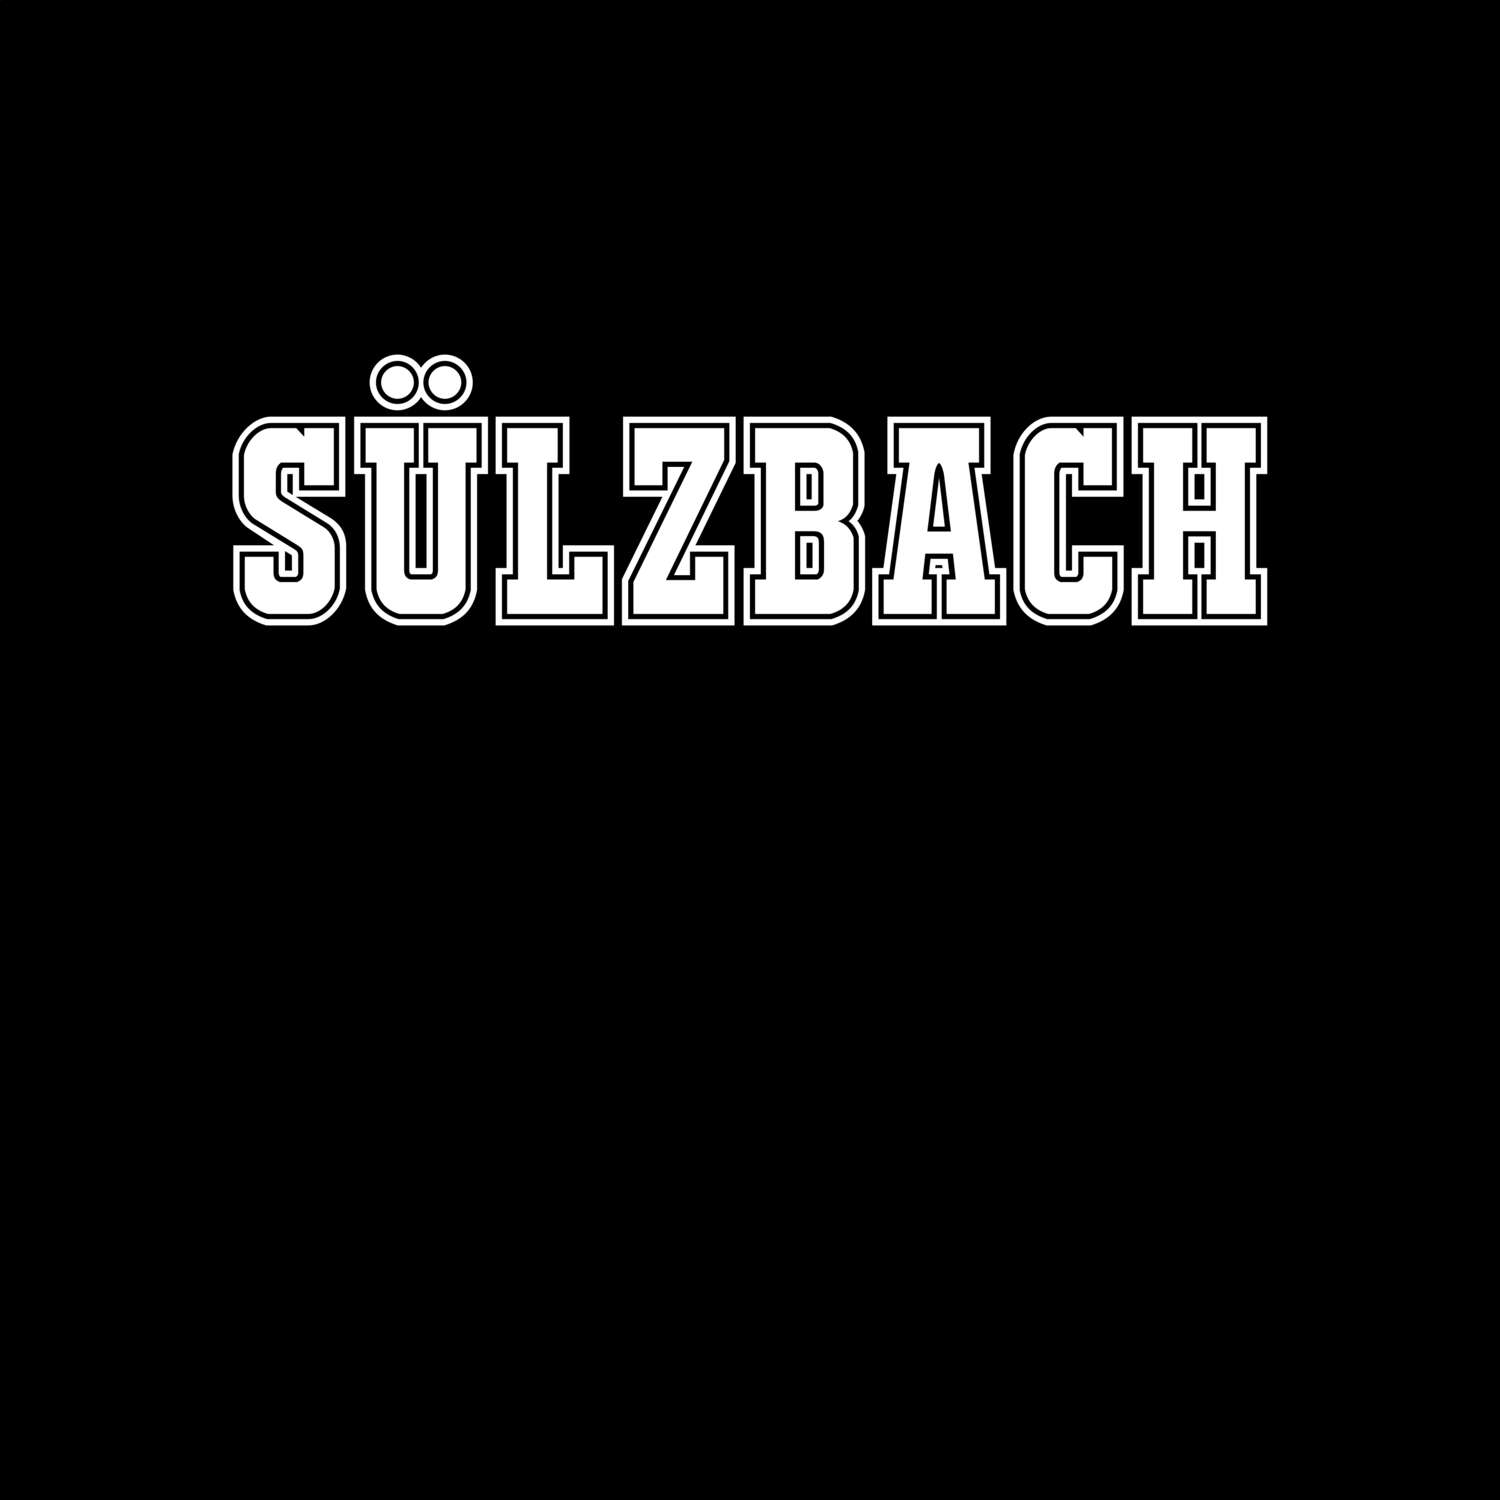 Sülzbach T-Shirt »Classic«